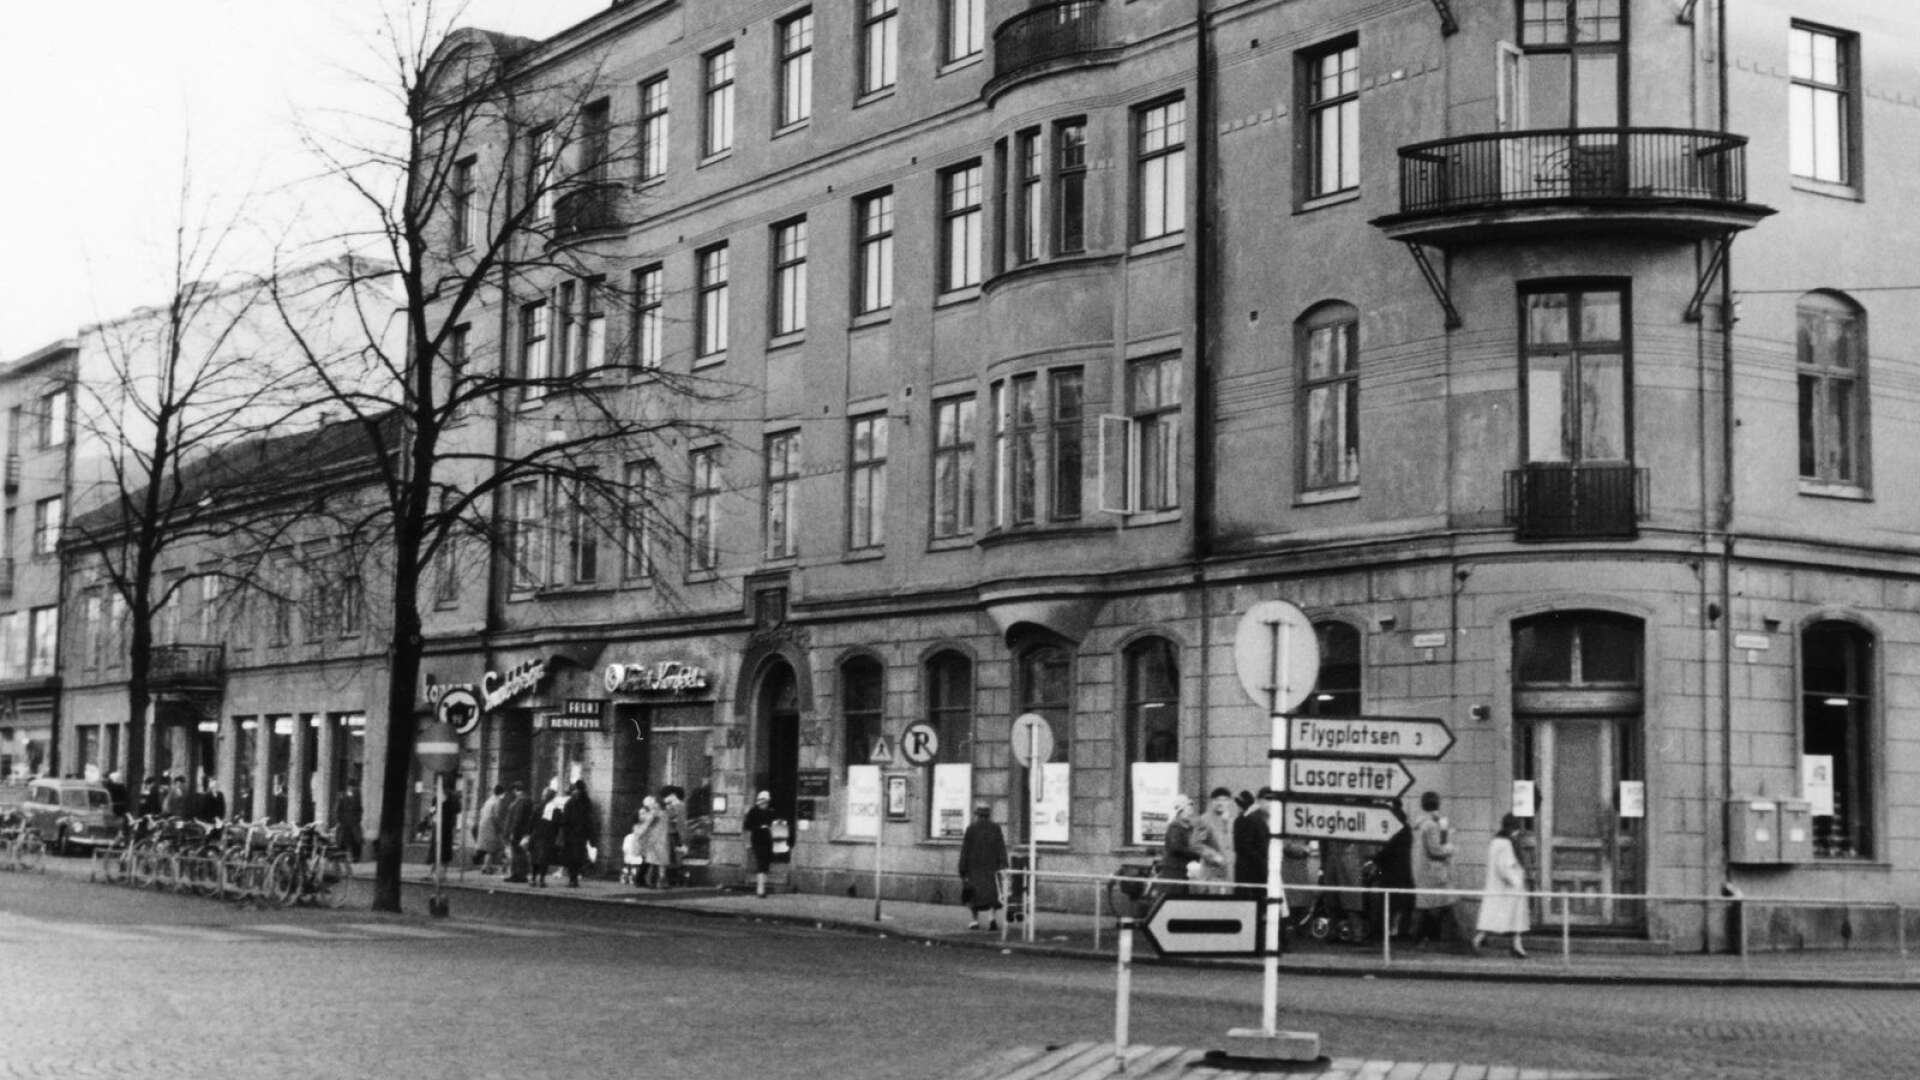 I hörnet av Tingvallagatan och Järnvägsgatan, innan Domushuset byggdes, låg Ahlmarkshuset. Det byggdes i två våningar strax efter branden 1865 och i början av 1907 ritade arkitekten Bror Almqvist till ytterligare två våningar. Antagligen var det då huset fick sin jugendprägel.